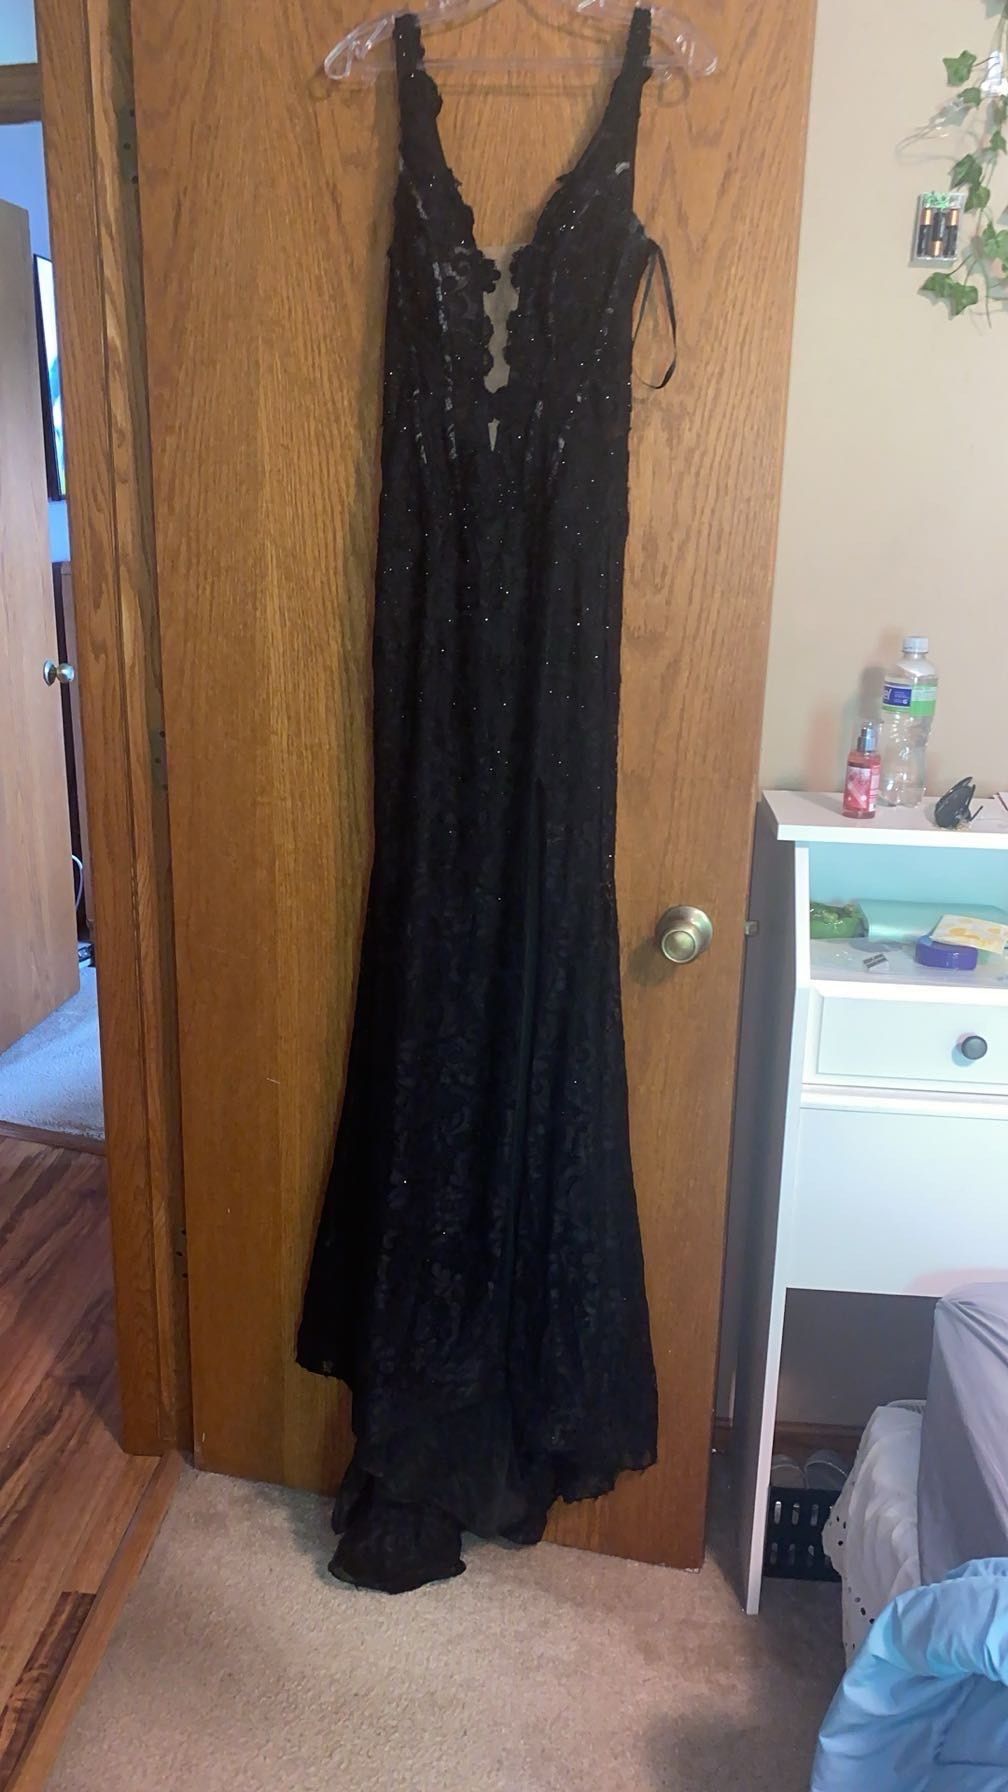 La Femme Size 00 Prom Floral Black Side Slit Dress on Queenly